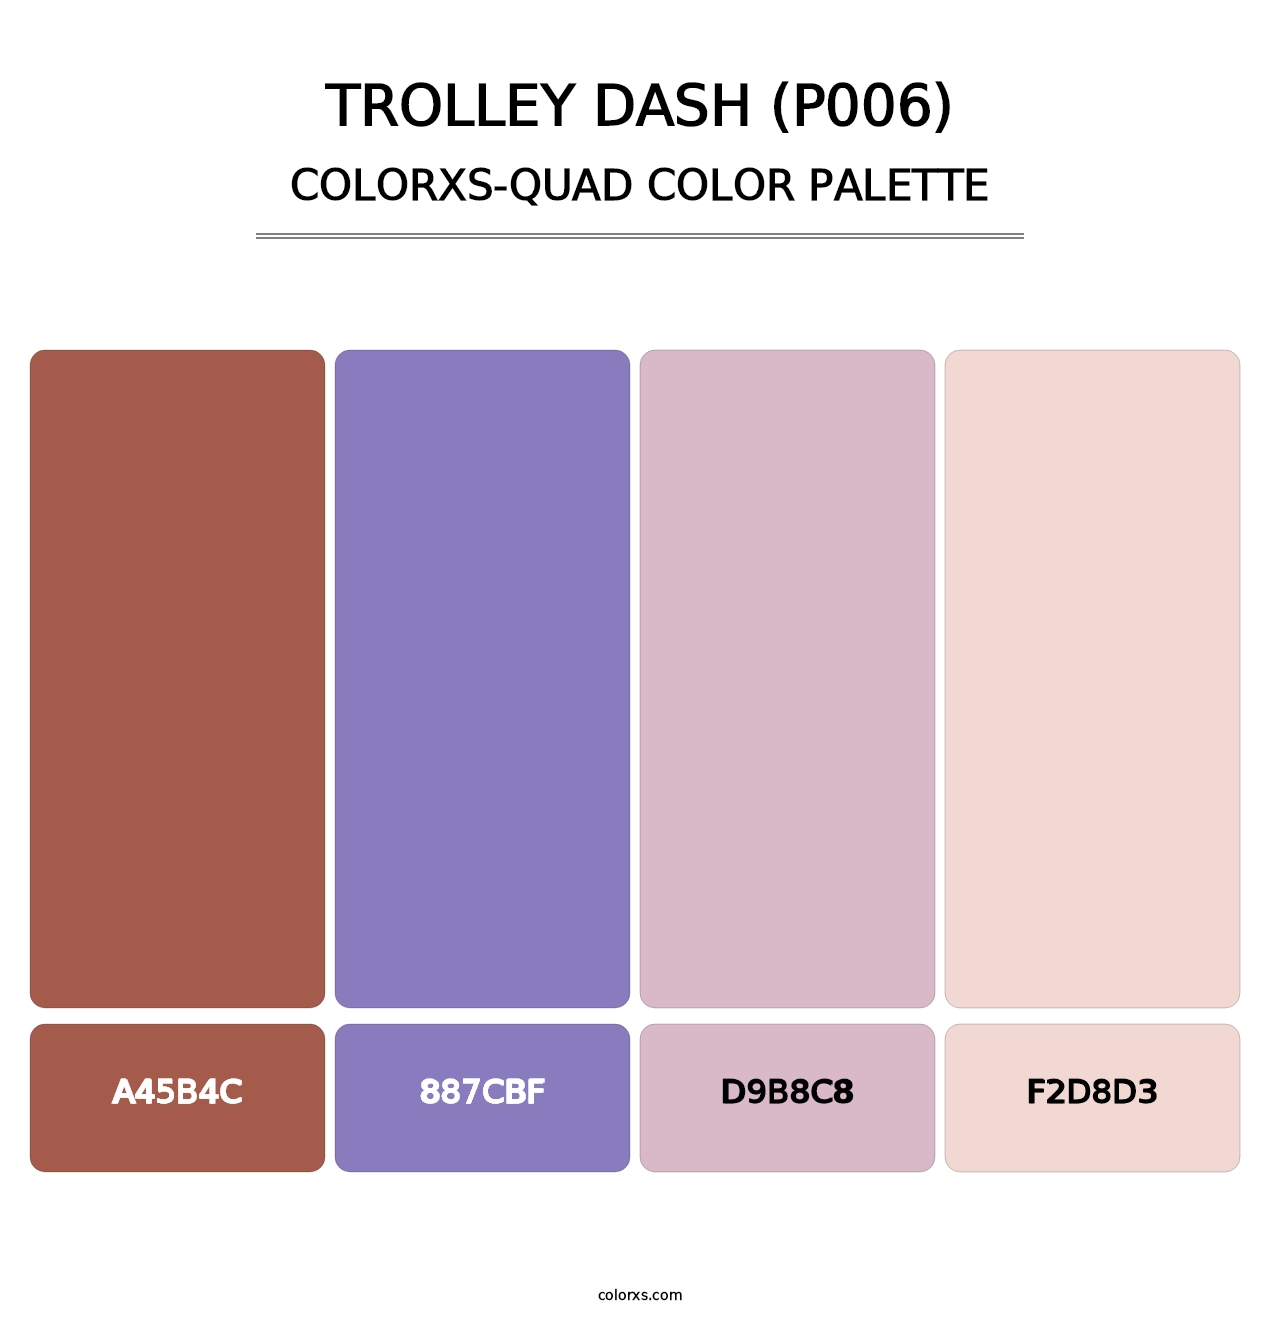 Trolley Dash (P006) - Colorxs Quad Palette